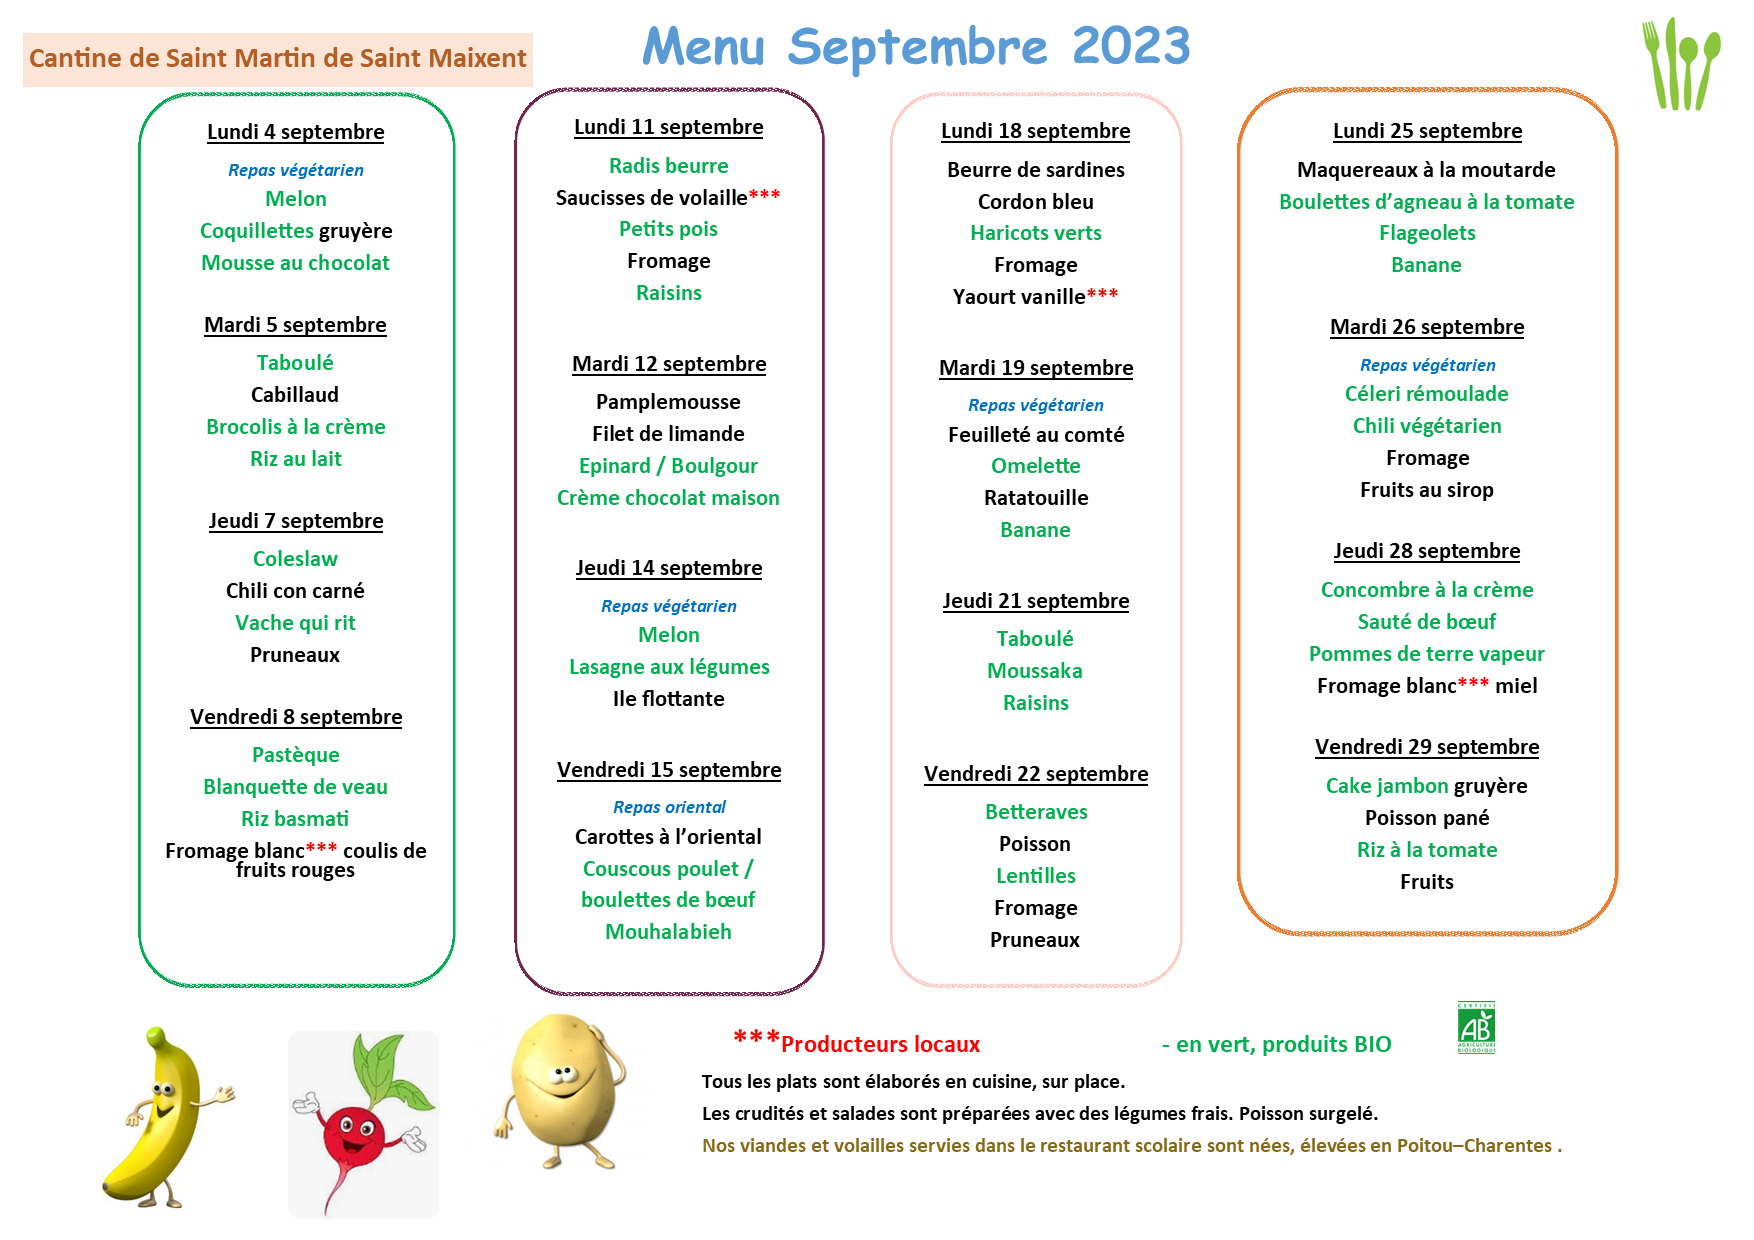 menu septembre 2023.png